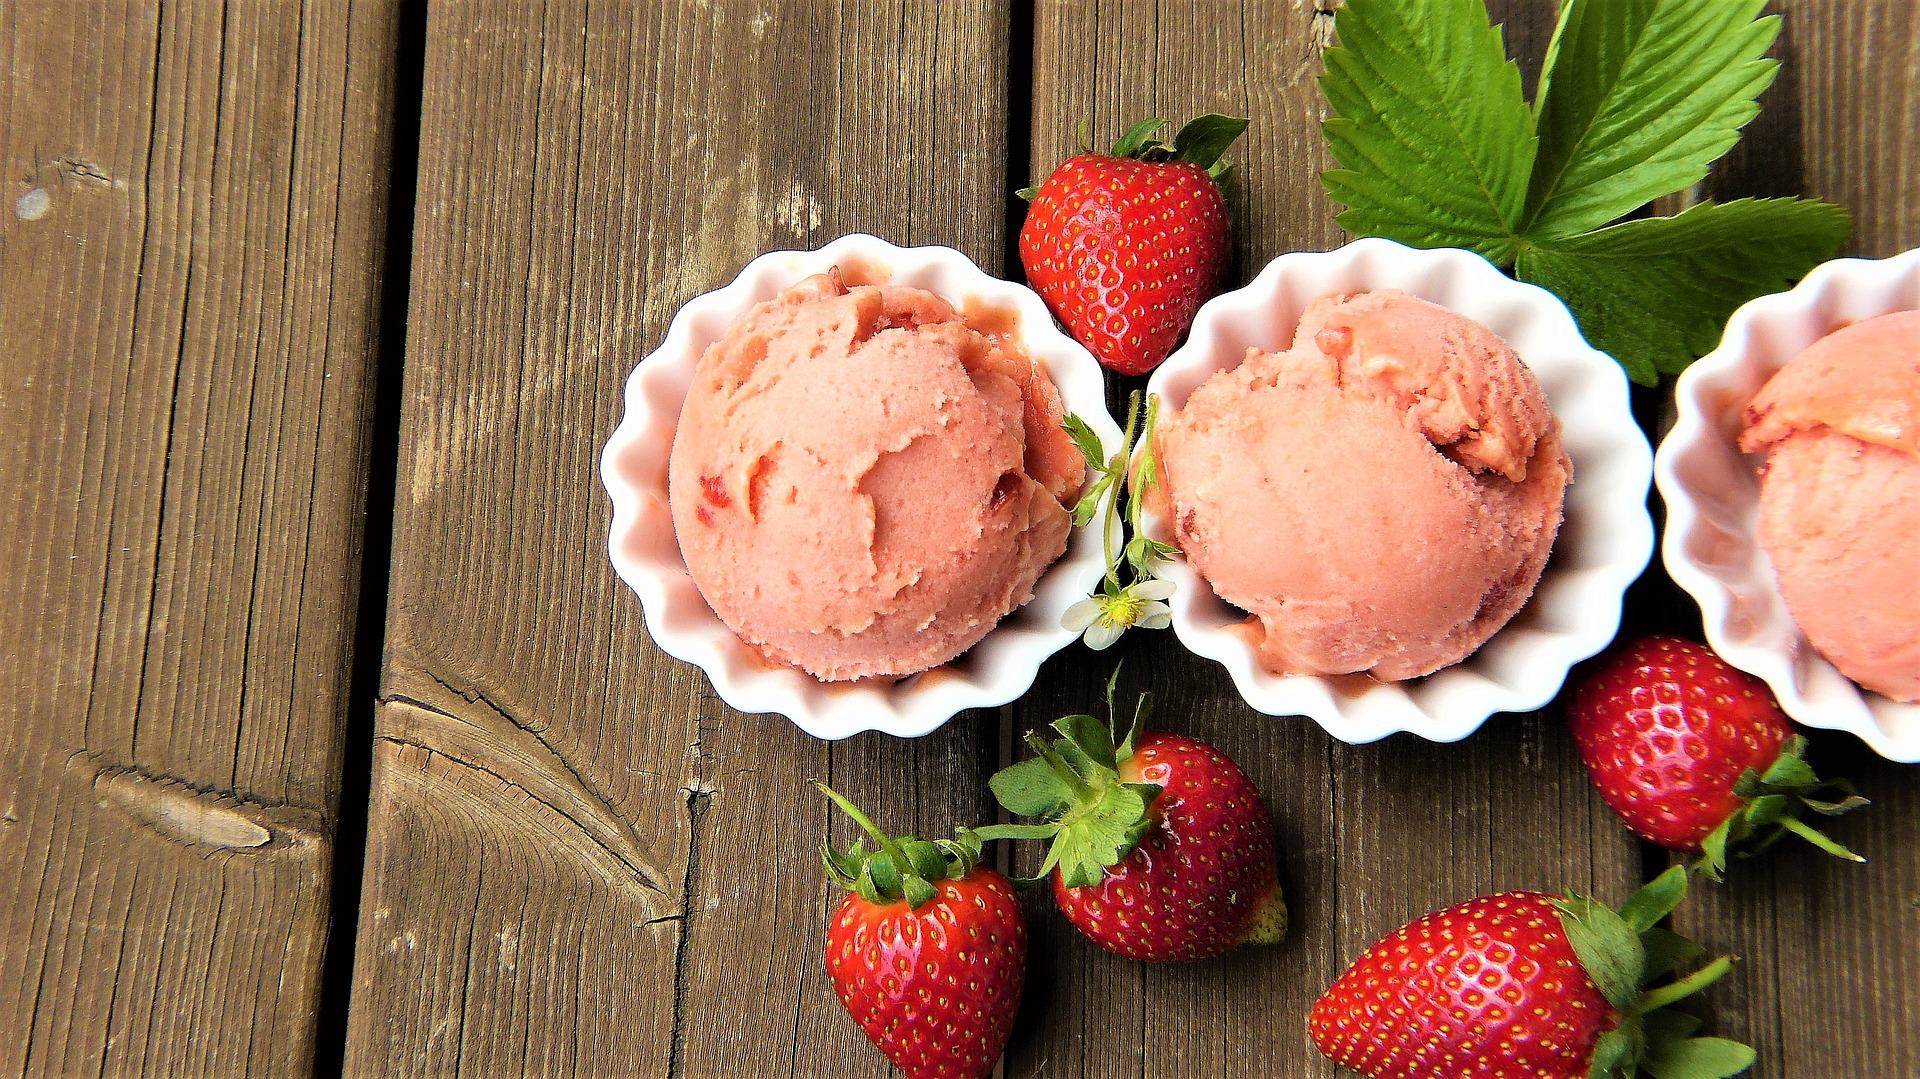 strawberry-ice-cream-g4880706b4_1920.jpg